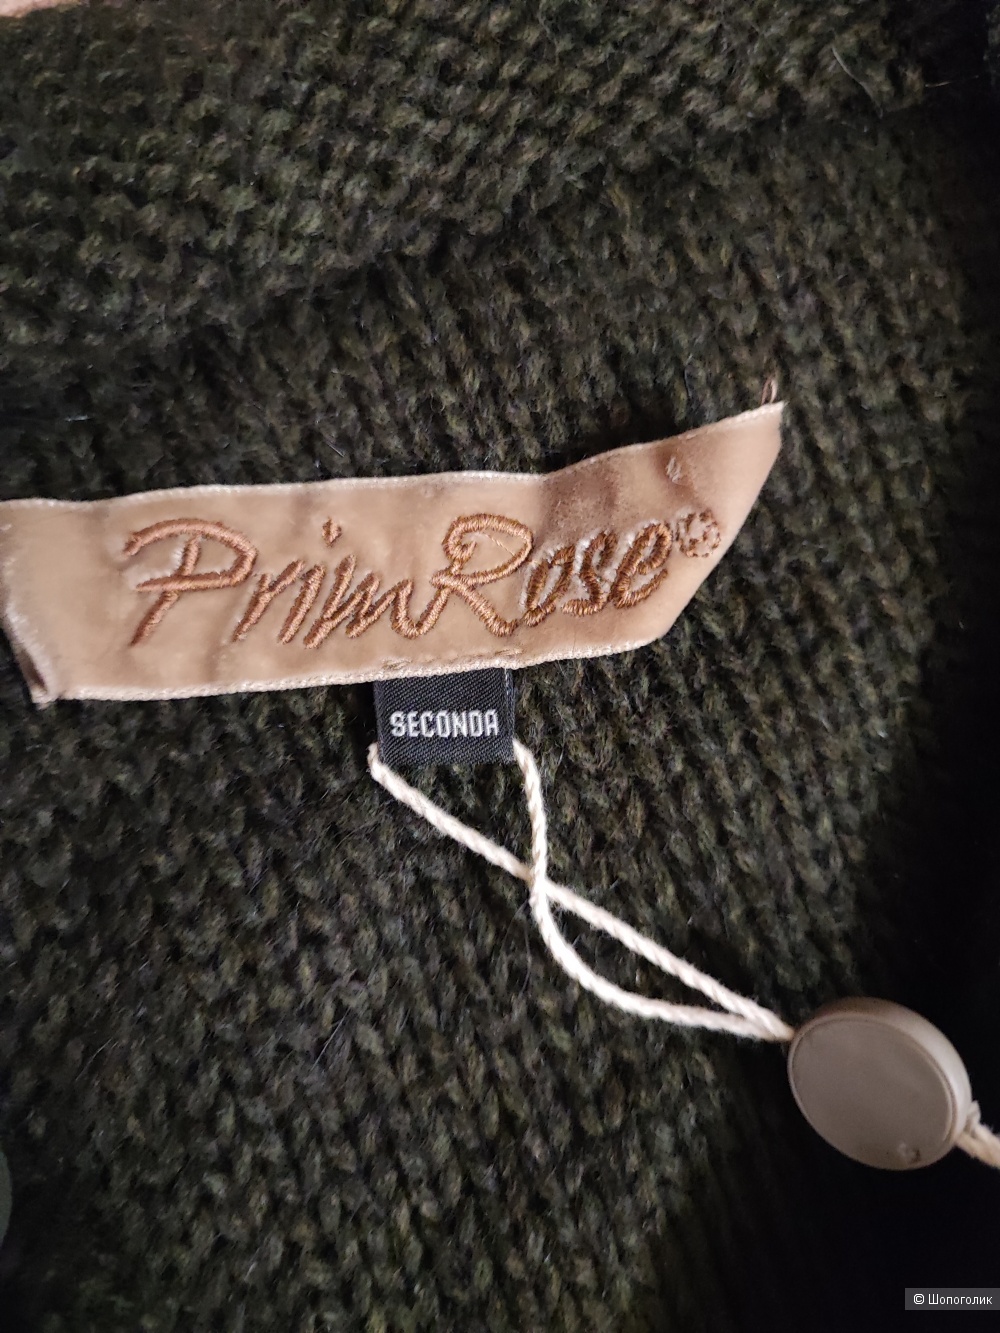 Вязаное пальто Primrose, one size